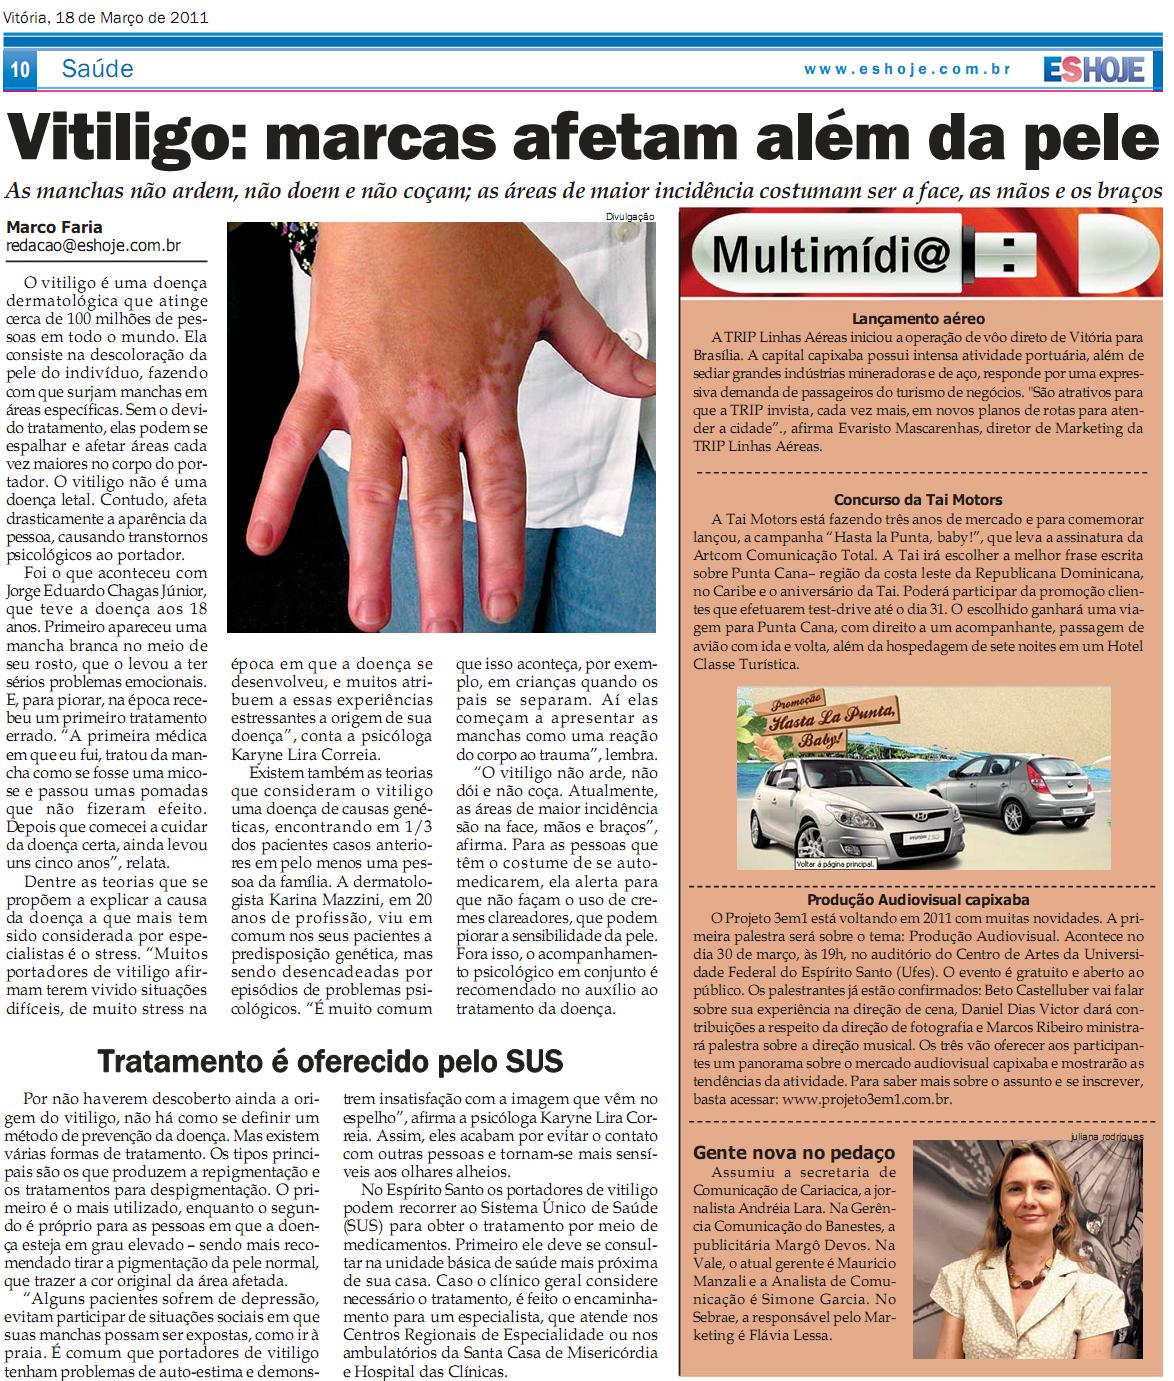 Entrevista sobre vitiligo para o Jornal Espírito Santo Hoje